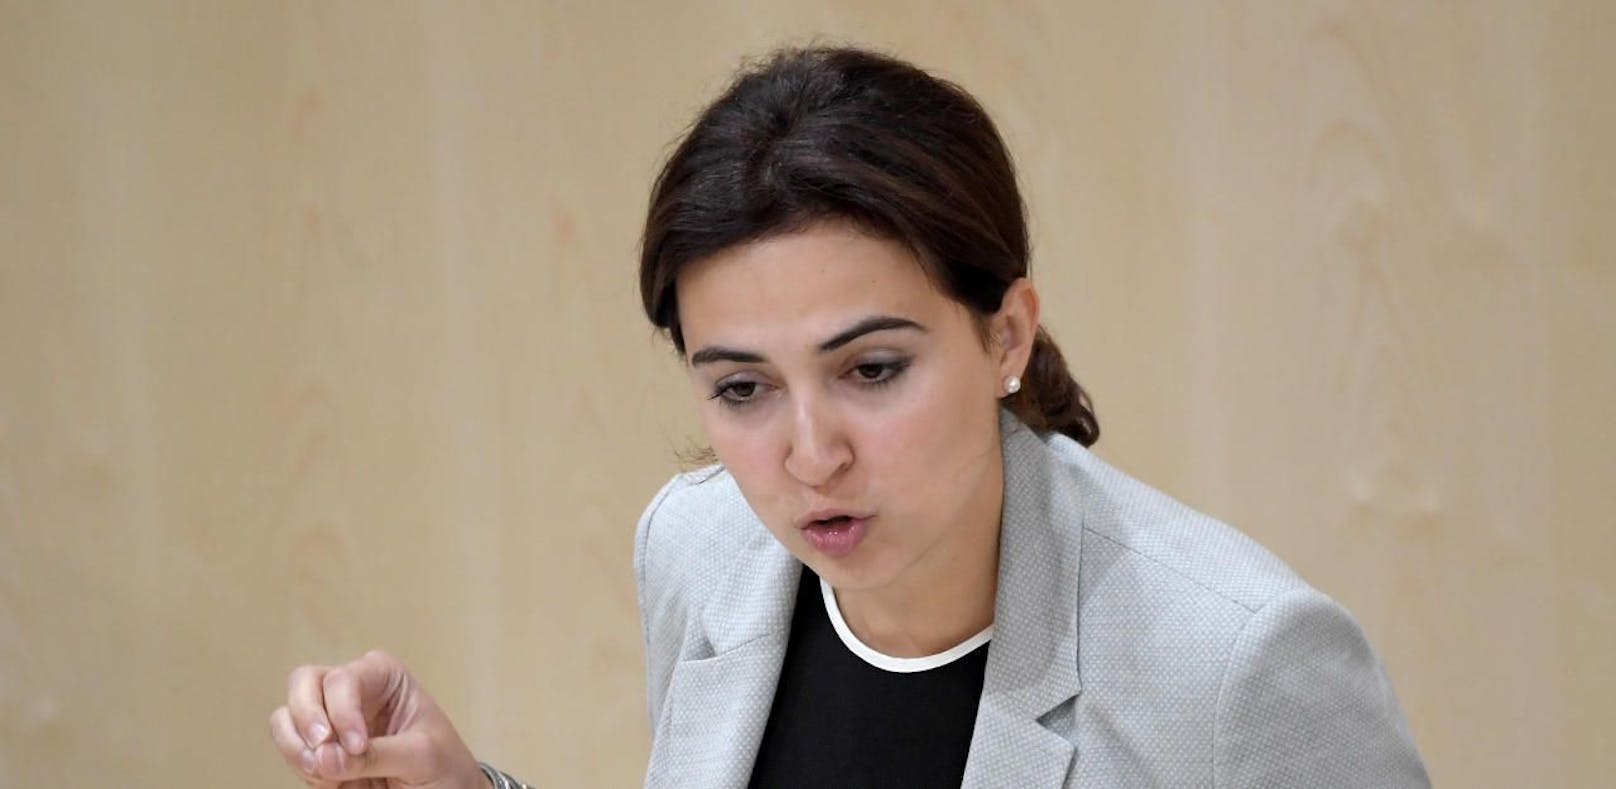 Die Abgeordnete Alma Zadic (P) im Rahmen einer Sondersitzung des Nationalrates zur BVT- Affäre. Dabei wurde sie beschimpft.